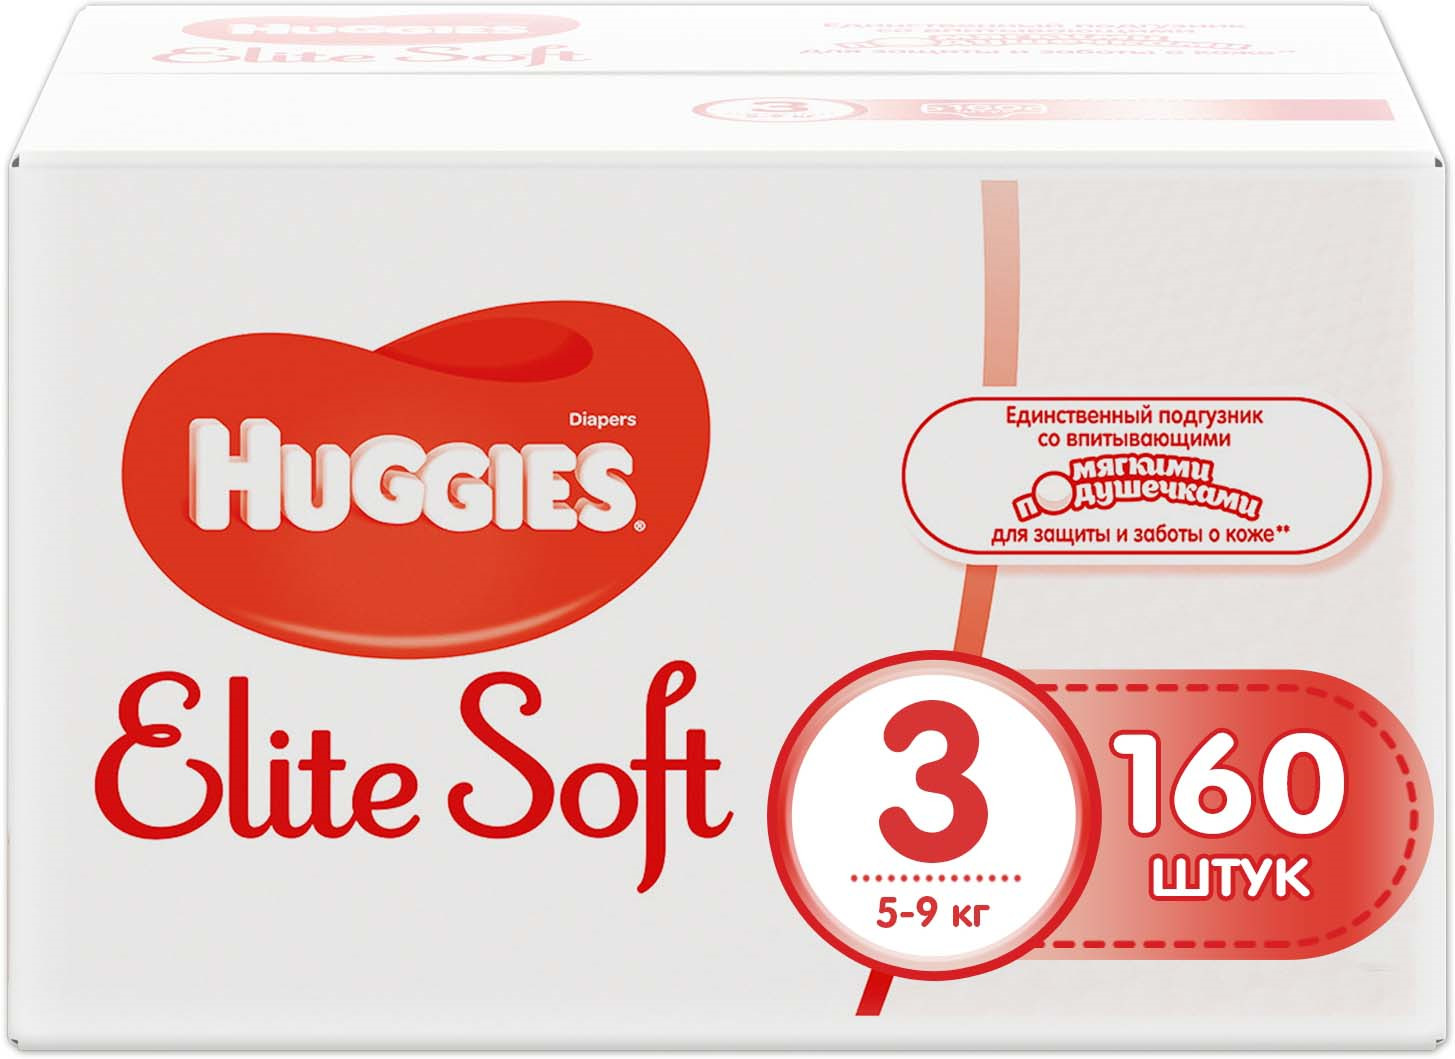 Huggies Подгузники Elite Soft 5-9 кг (размер 3) 160 шт